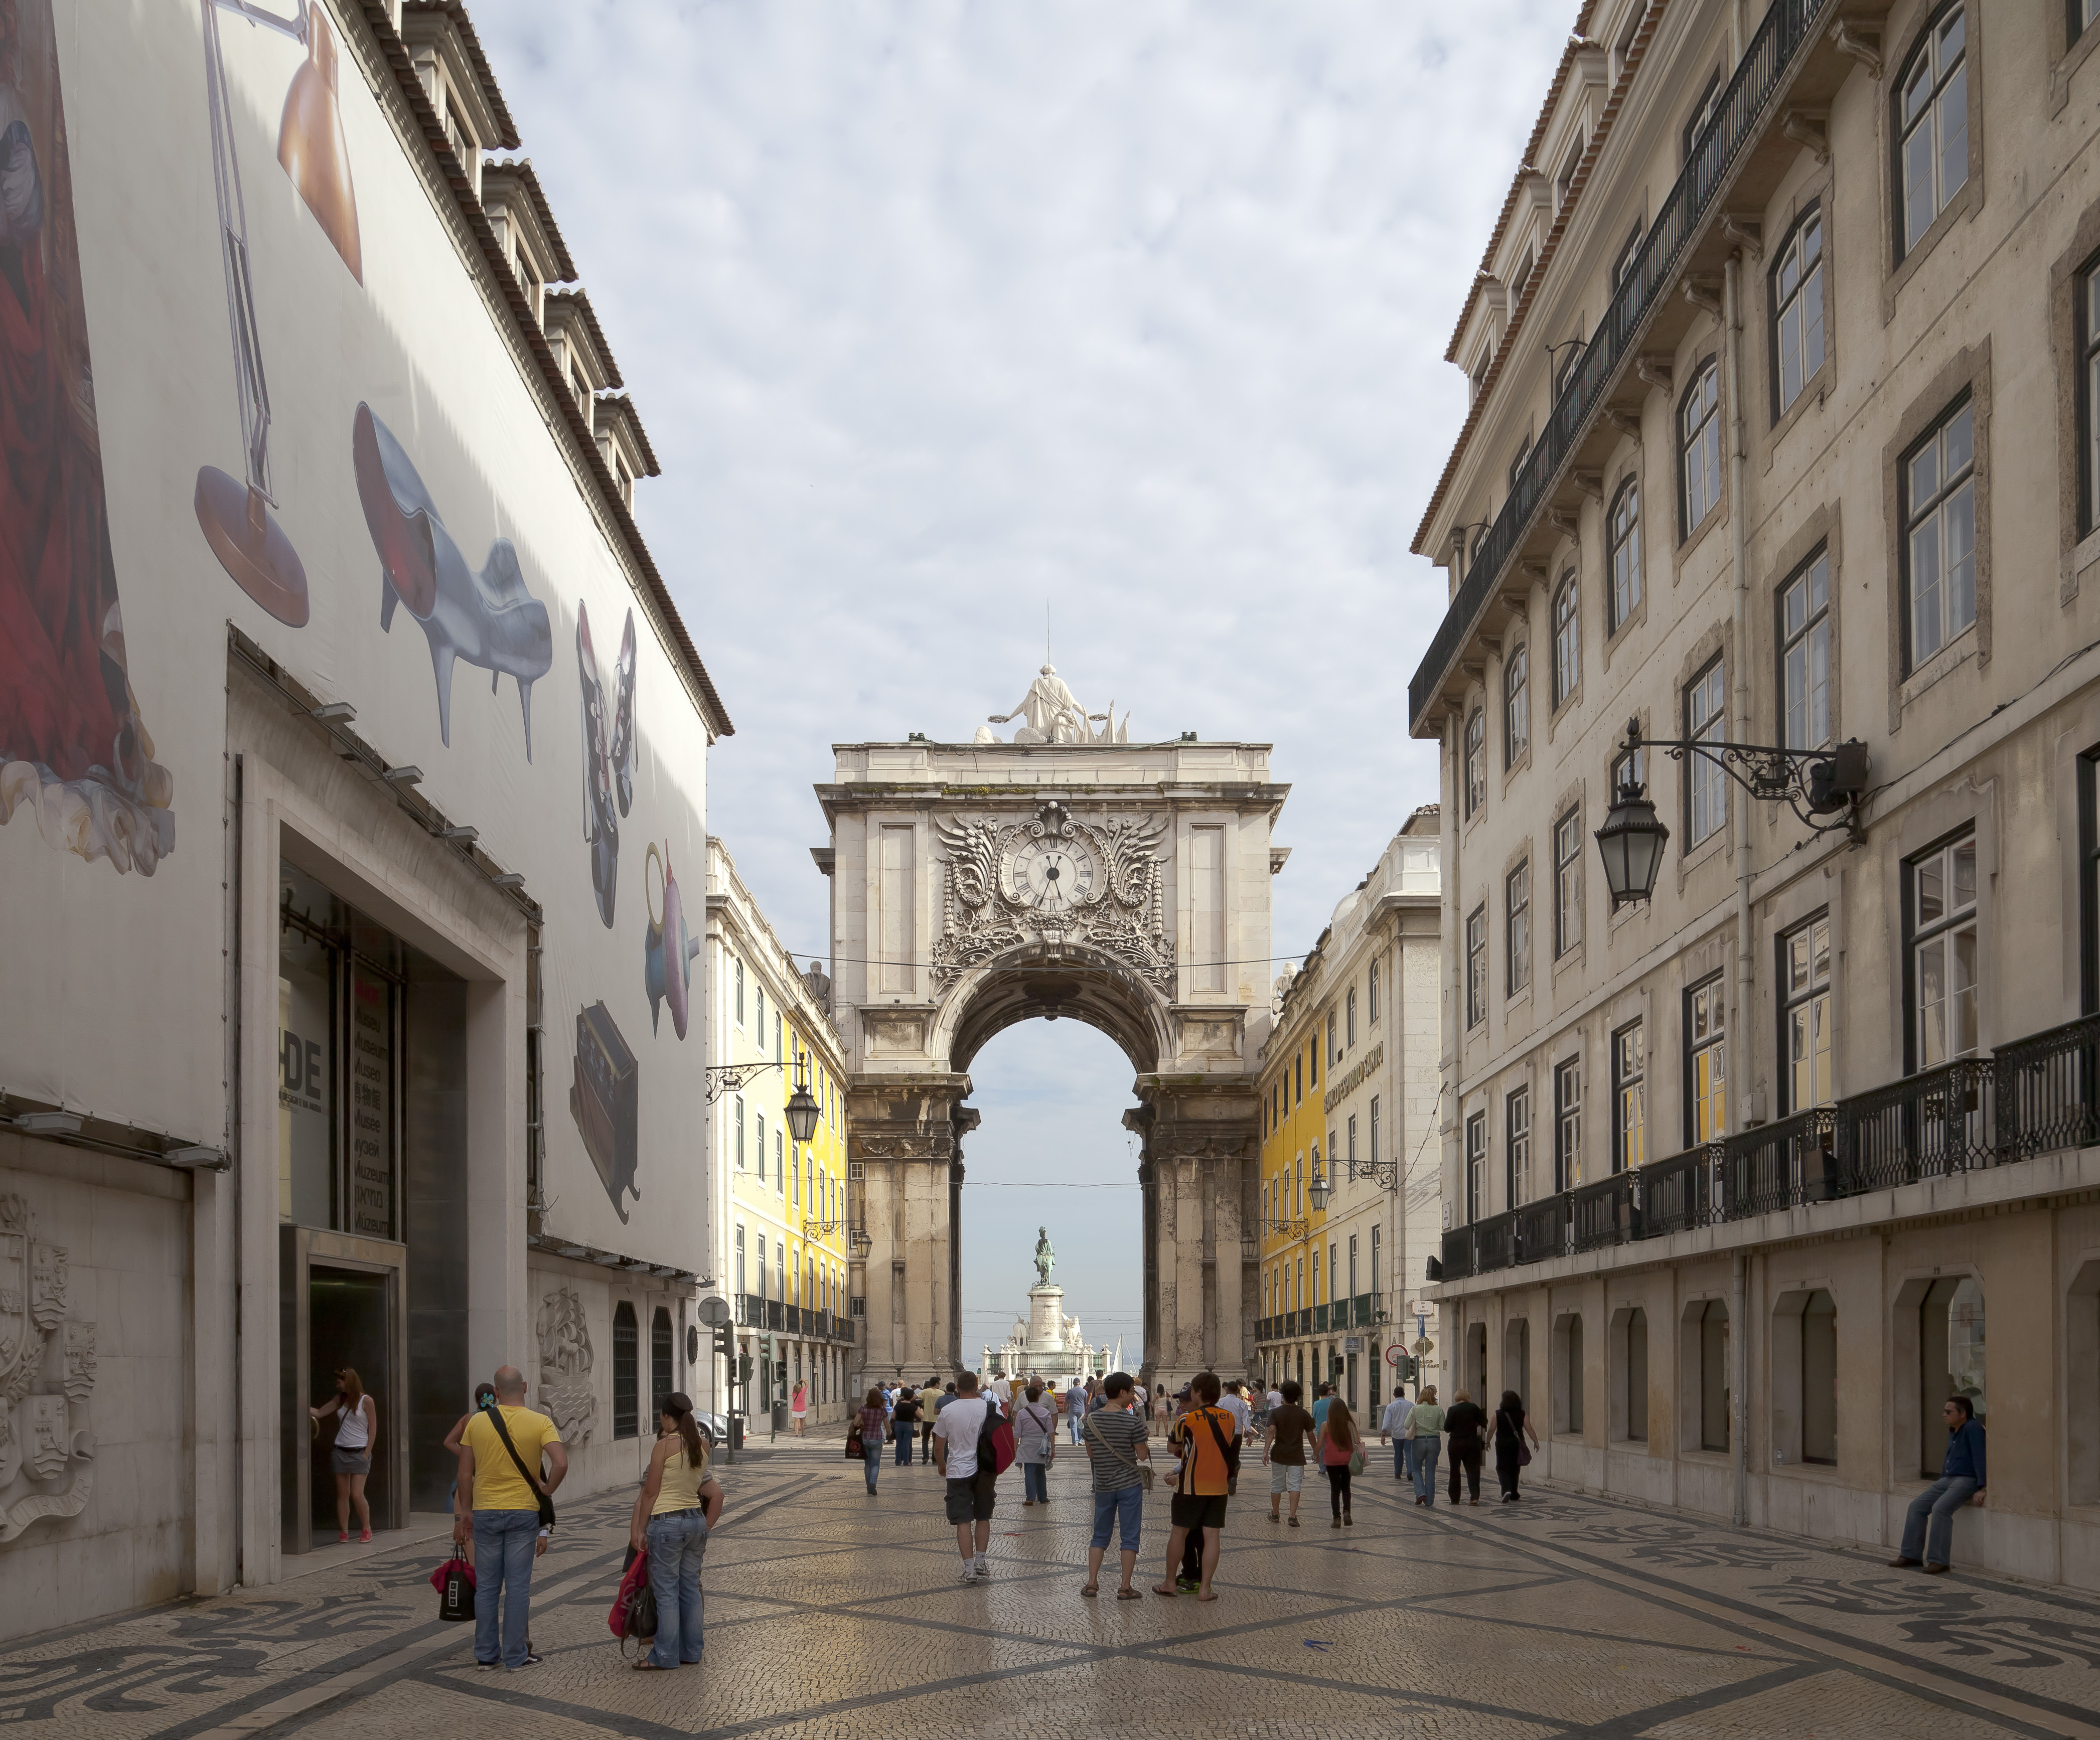 Arco Triunfal da Rua Augusta, Plaza del Comercio, Lisboa, Portugal, 2012-05-12, DD 04